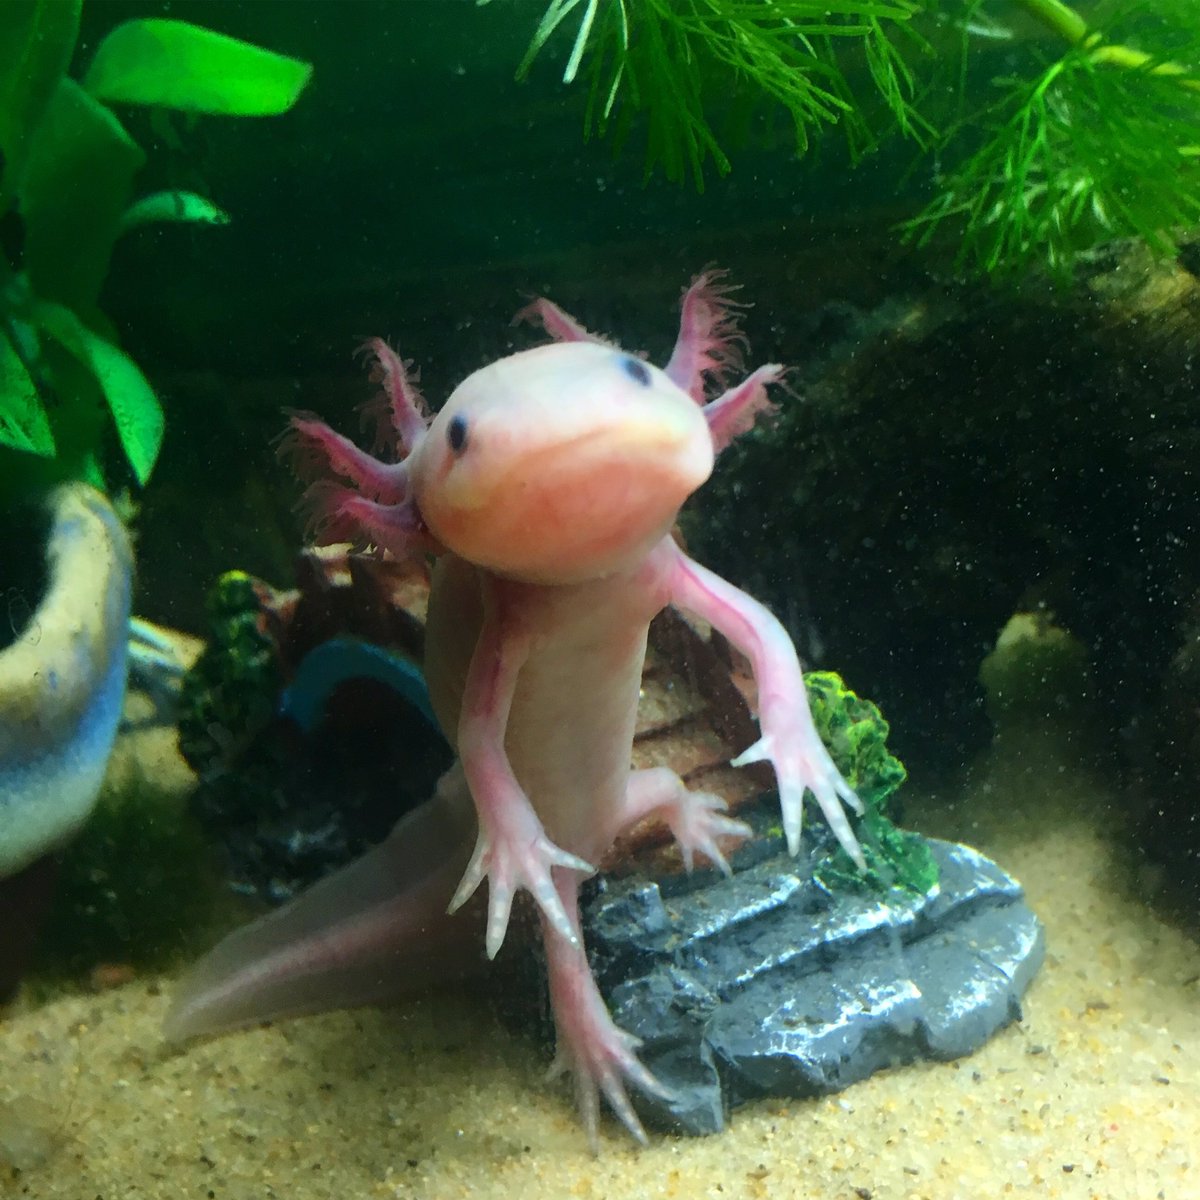 ウルルン Pa Twitter ちょっと エッチ な事考えてたうぱ ˊ ˋ ウーパールーパー ウルルン Axolotl ウーパー アホロートル 平野ノラ バブル メキシコサラマンダー リューシスティック 可愛い サラマンダー Cute サンショウウオ 水槽 T Co